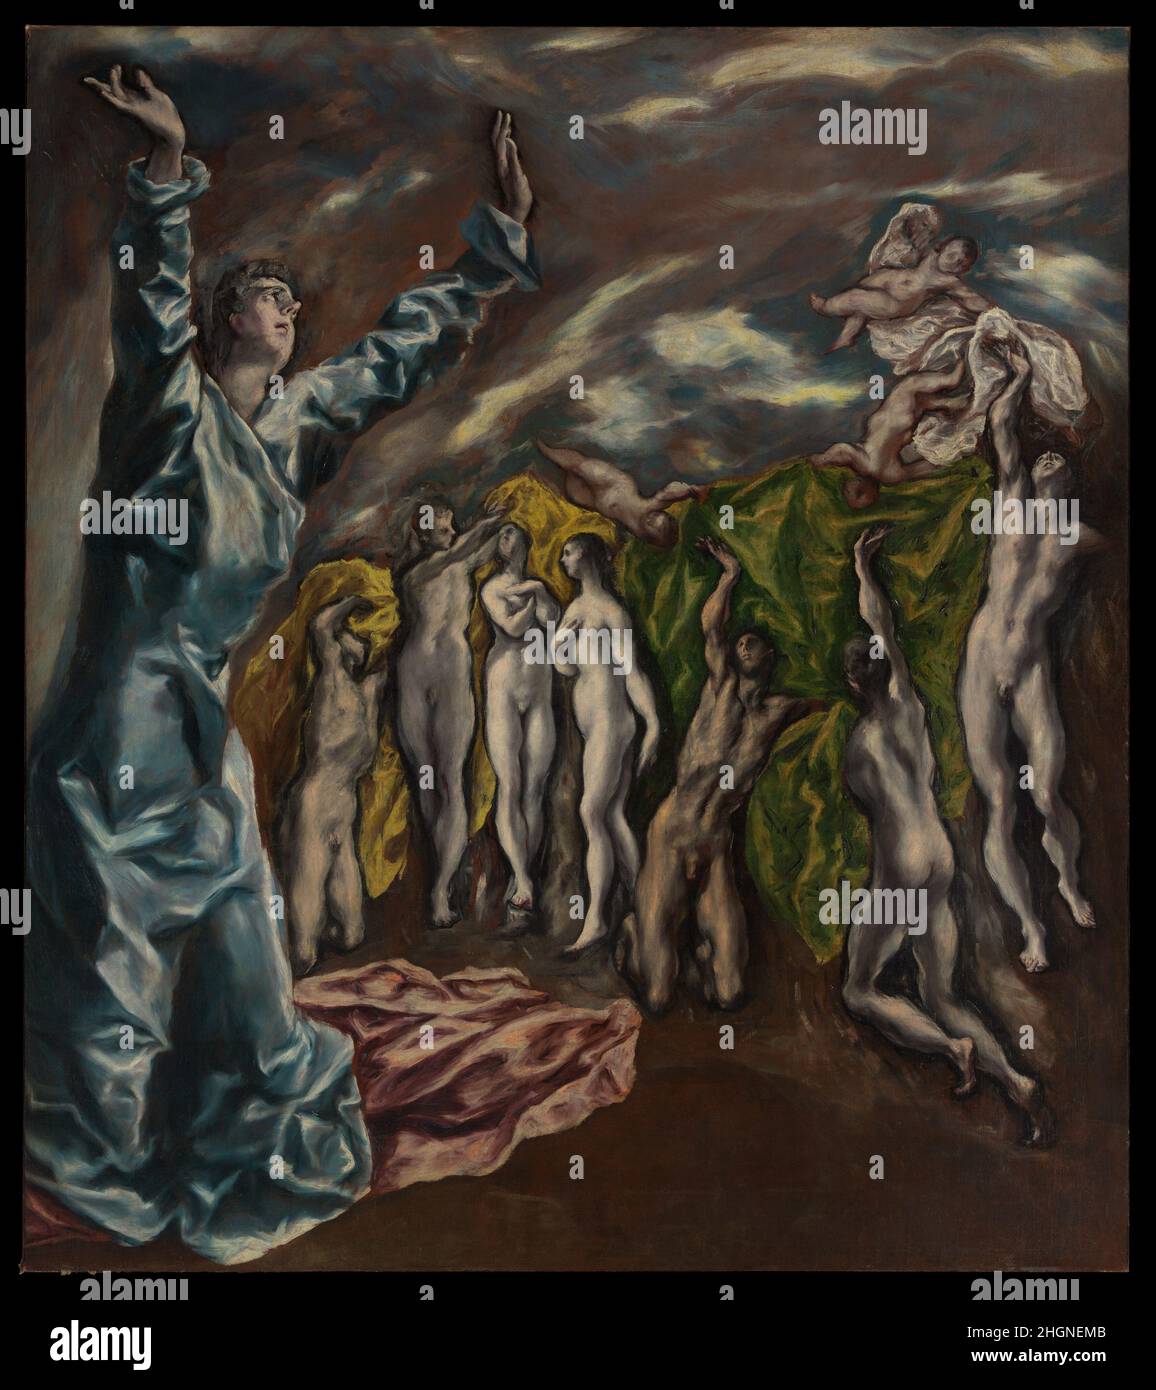 La vision de Saint John ca.1608–14 El Greco (Domenikos Theotokopoulos) grec le tableau est un fragment d'un grand retable commandé pour l'église de l'hôpital Saint Jean-Baptiste de Tolède.Il dépeint un passage dans la Bible, Apocalypse (6:9-11) décrivant l'ouverture du Cinquième Sceau à la fin des temps, et la distribution de robes blanches à ceux qui avaient été tués pour l'oeuvre de Dieu et pour le témoignage qu'ils avaient porté.La partie supérieure manquante peut avoir montré l'agneau sacrificiel ouvrant le cinquième joint.La toile était une œuvre emblématique pour les artistes du XXe siècle et Pica Banque D'Images